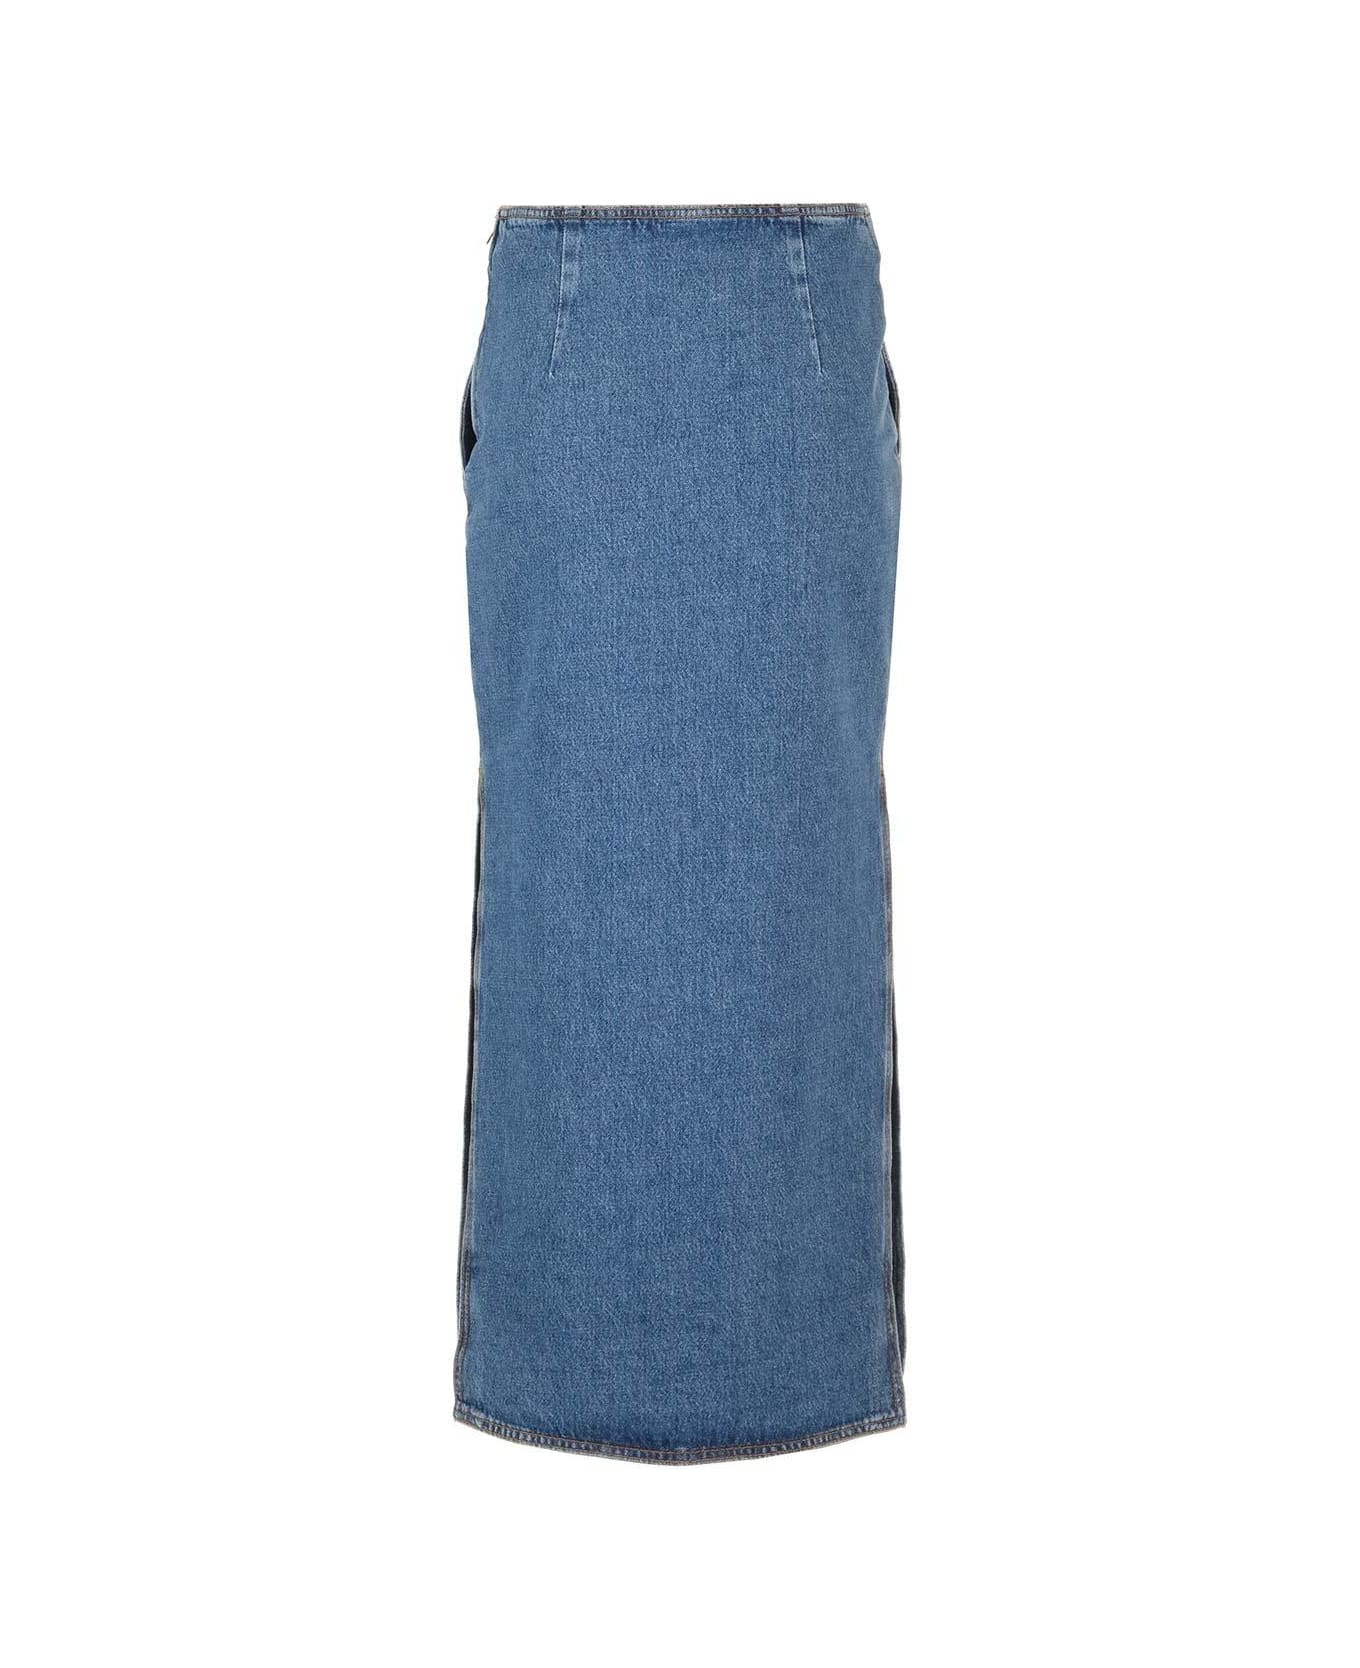 Etro Washed Denim Long Skirt - Azzurro スカート